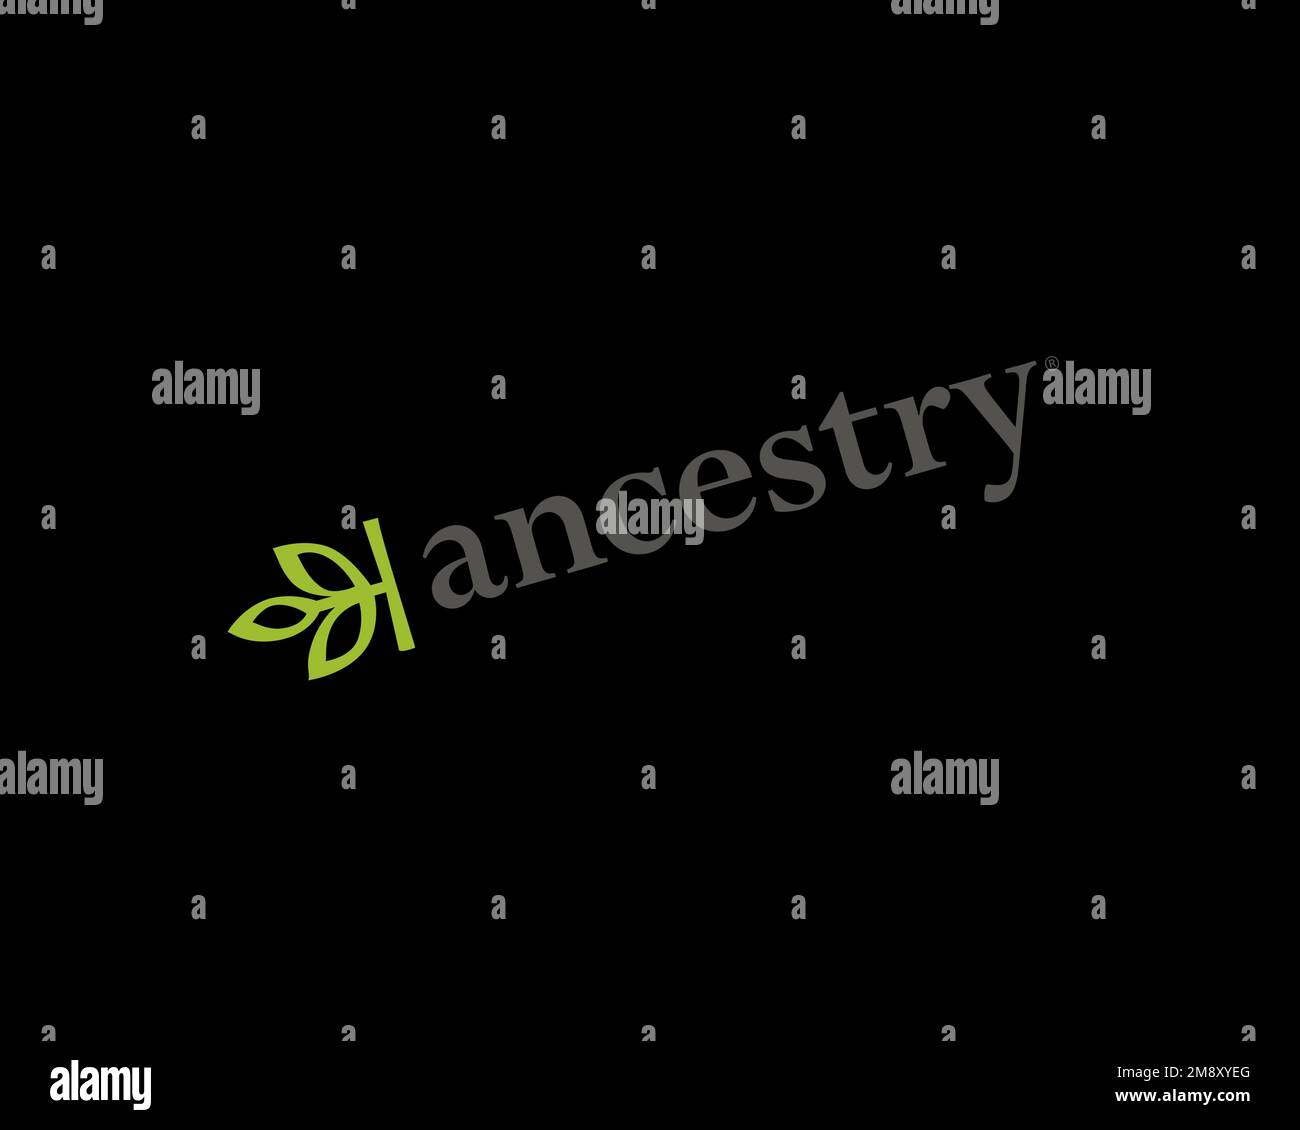 Abstammung. com, gedrehtes Logo, schwarzer Hintergrund Stockfoto